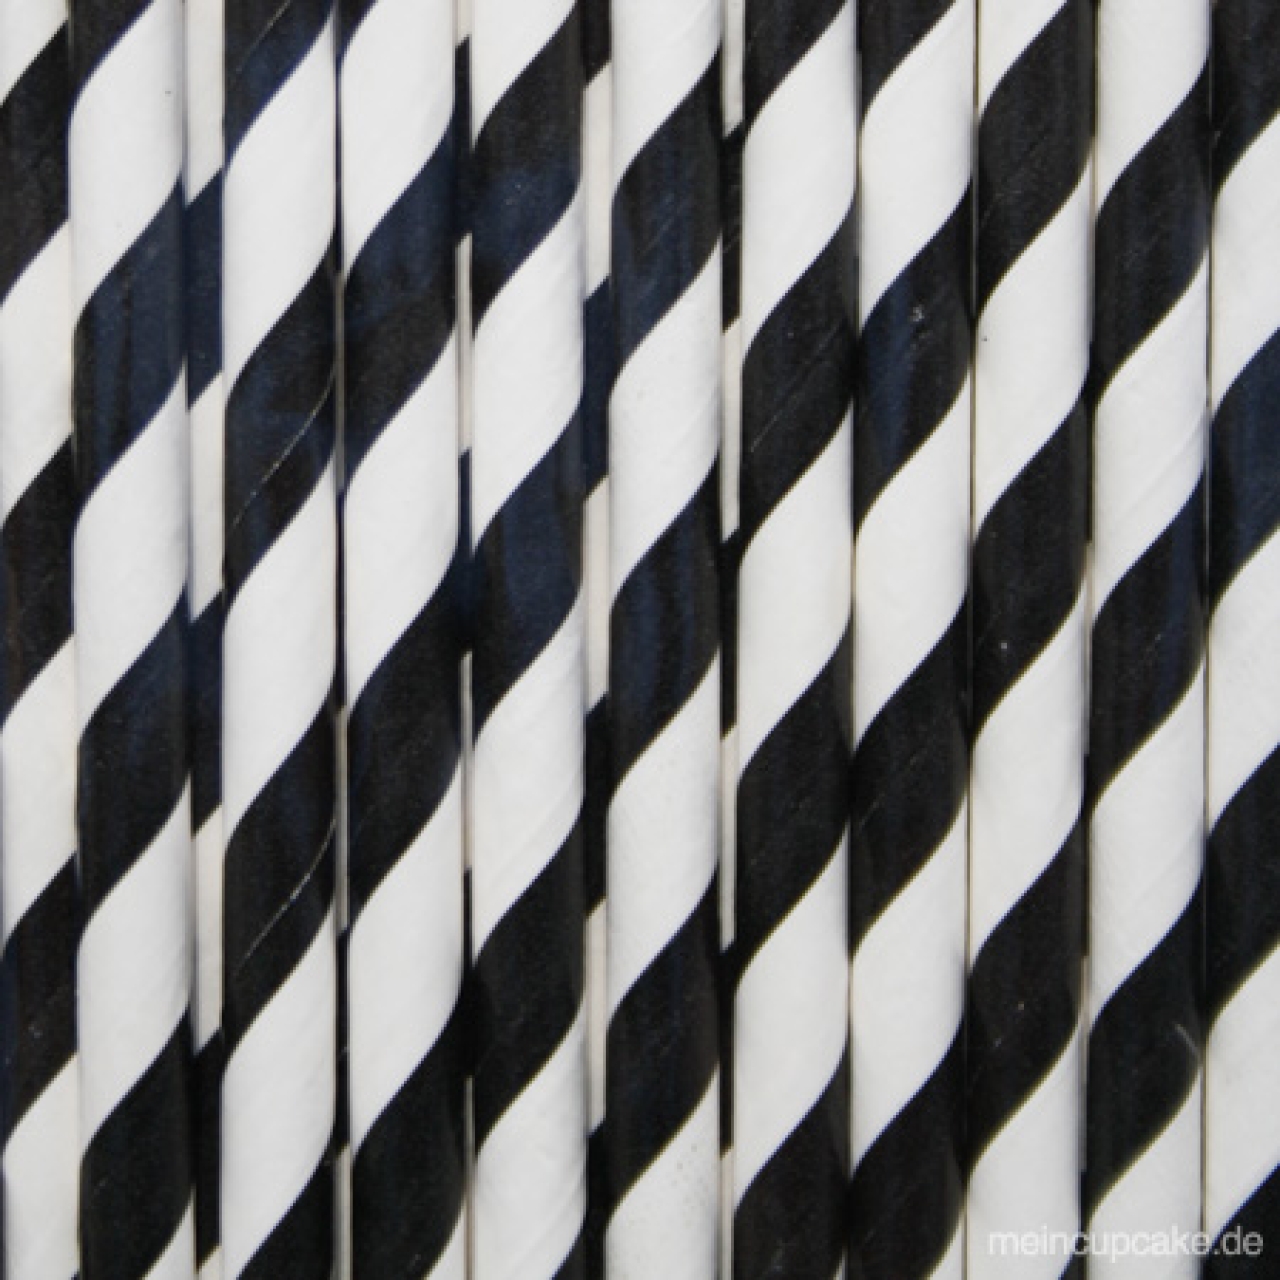 25 Papier-Strohhalme, schwarz, weiß gestreift, Trinkhalme